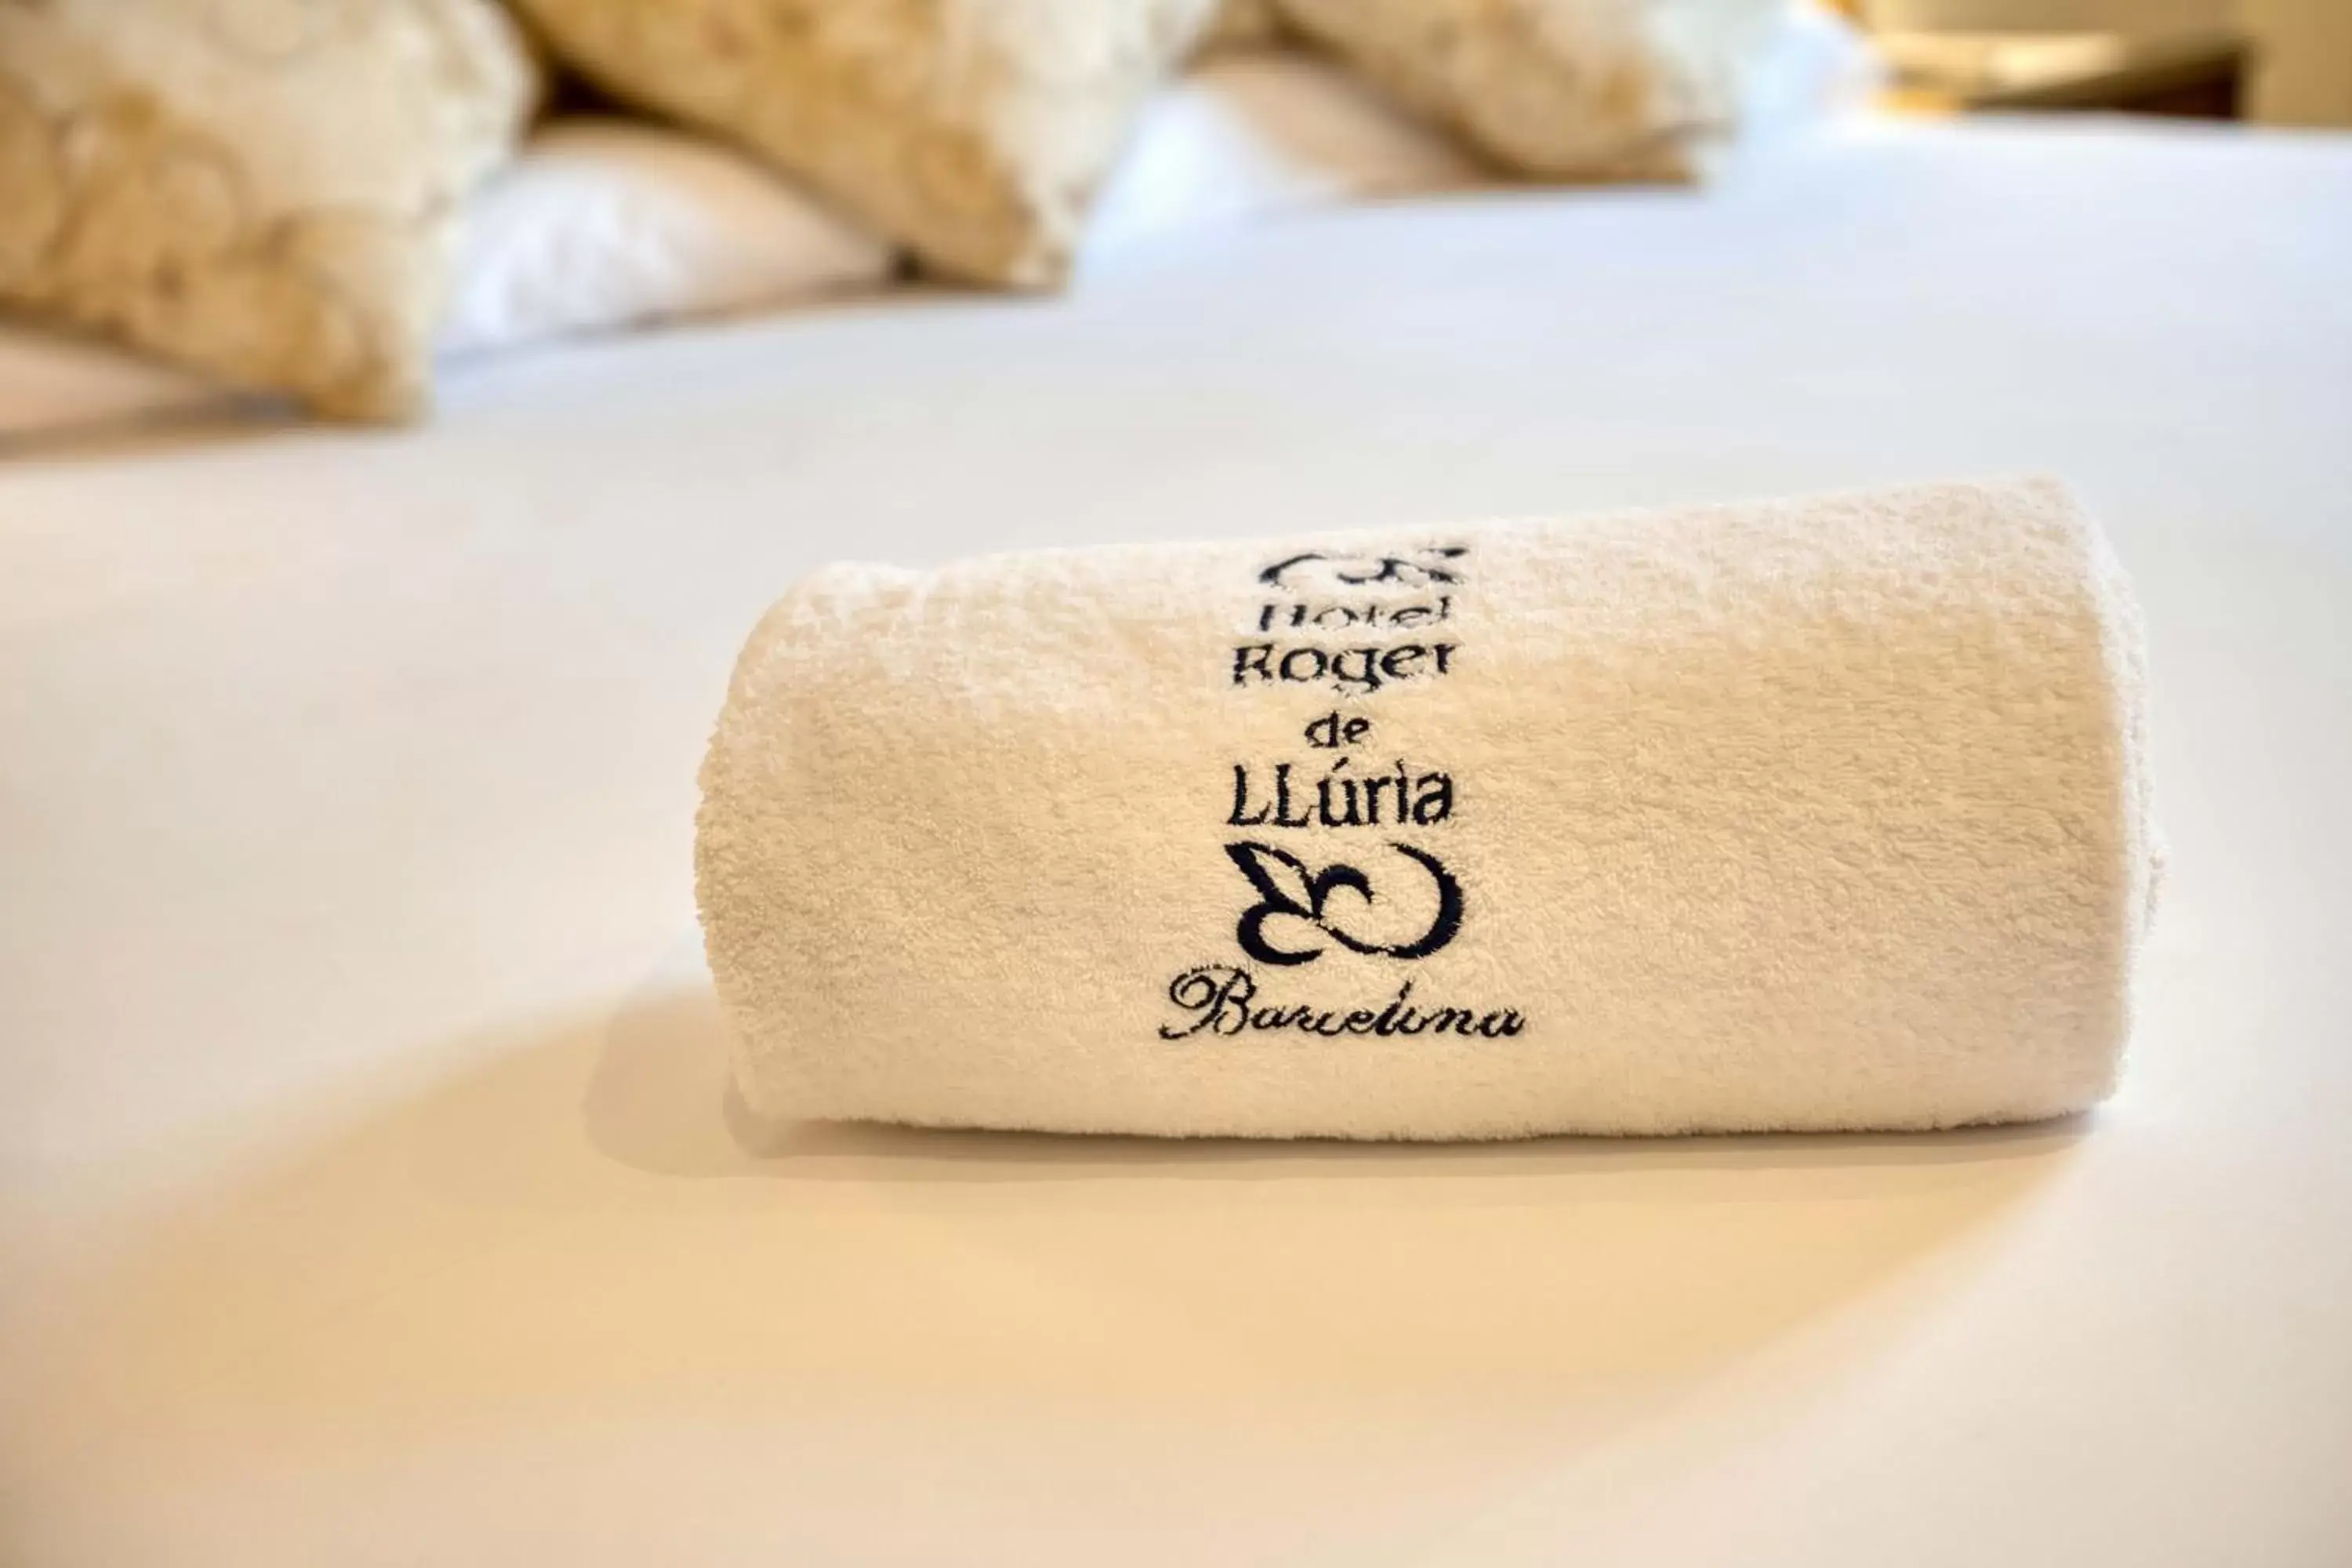 towels in Hotel Roger de Llúria